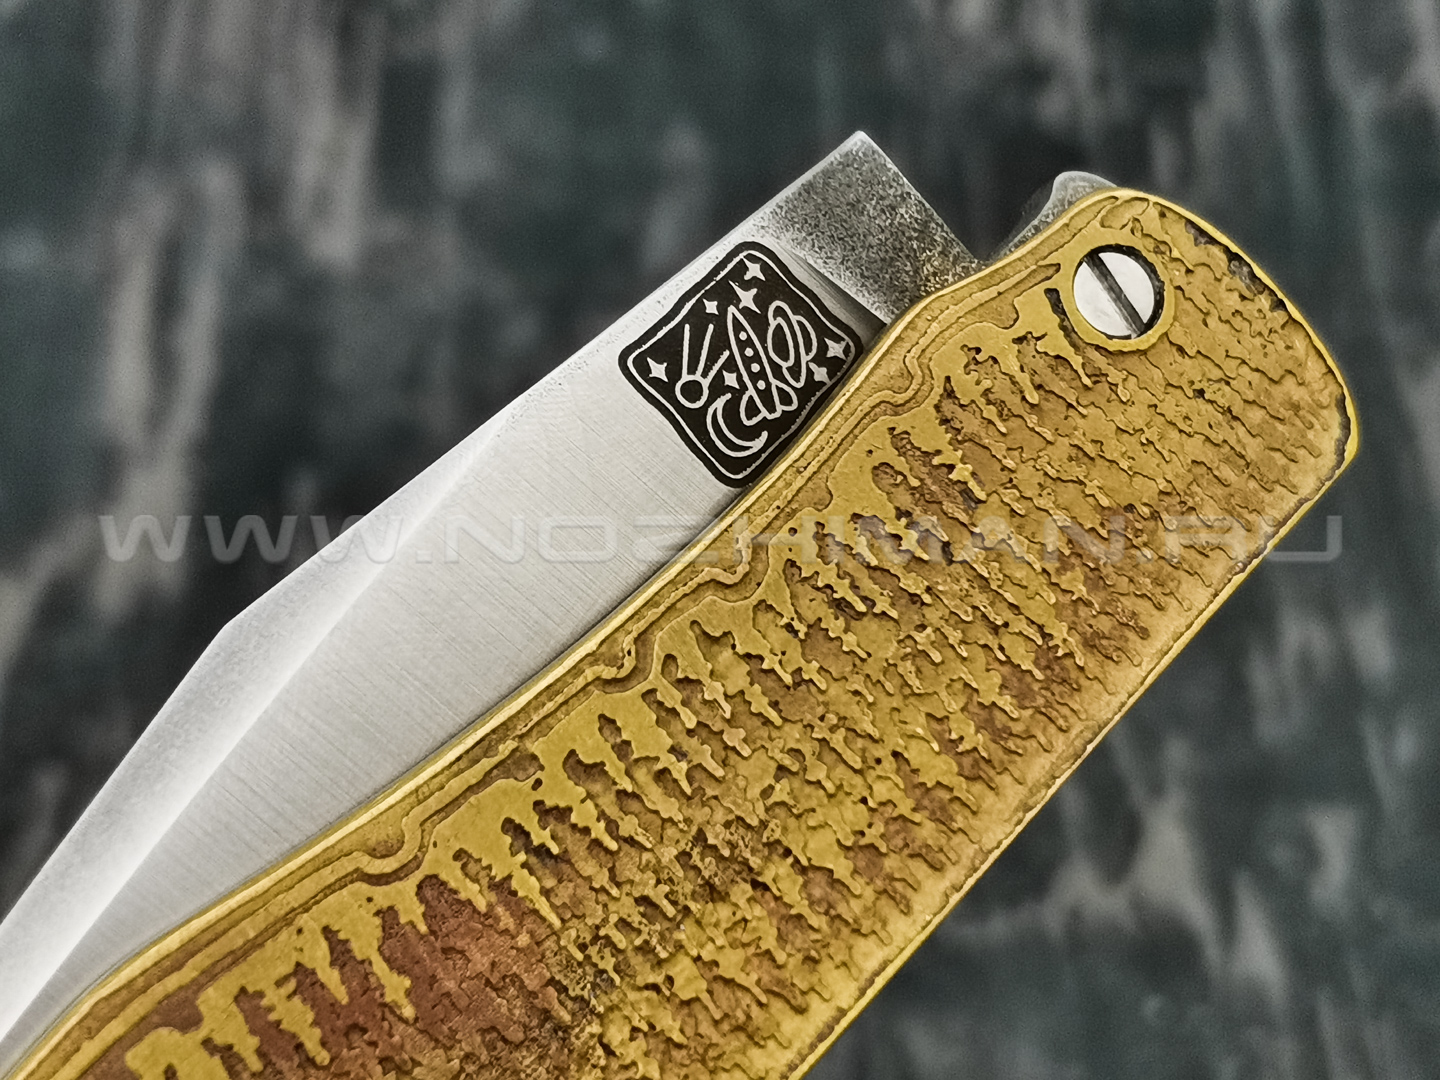 1-й Цех нож "Складень" сталь K110, рукоять бронза с худ. травлением, G10